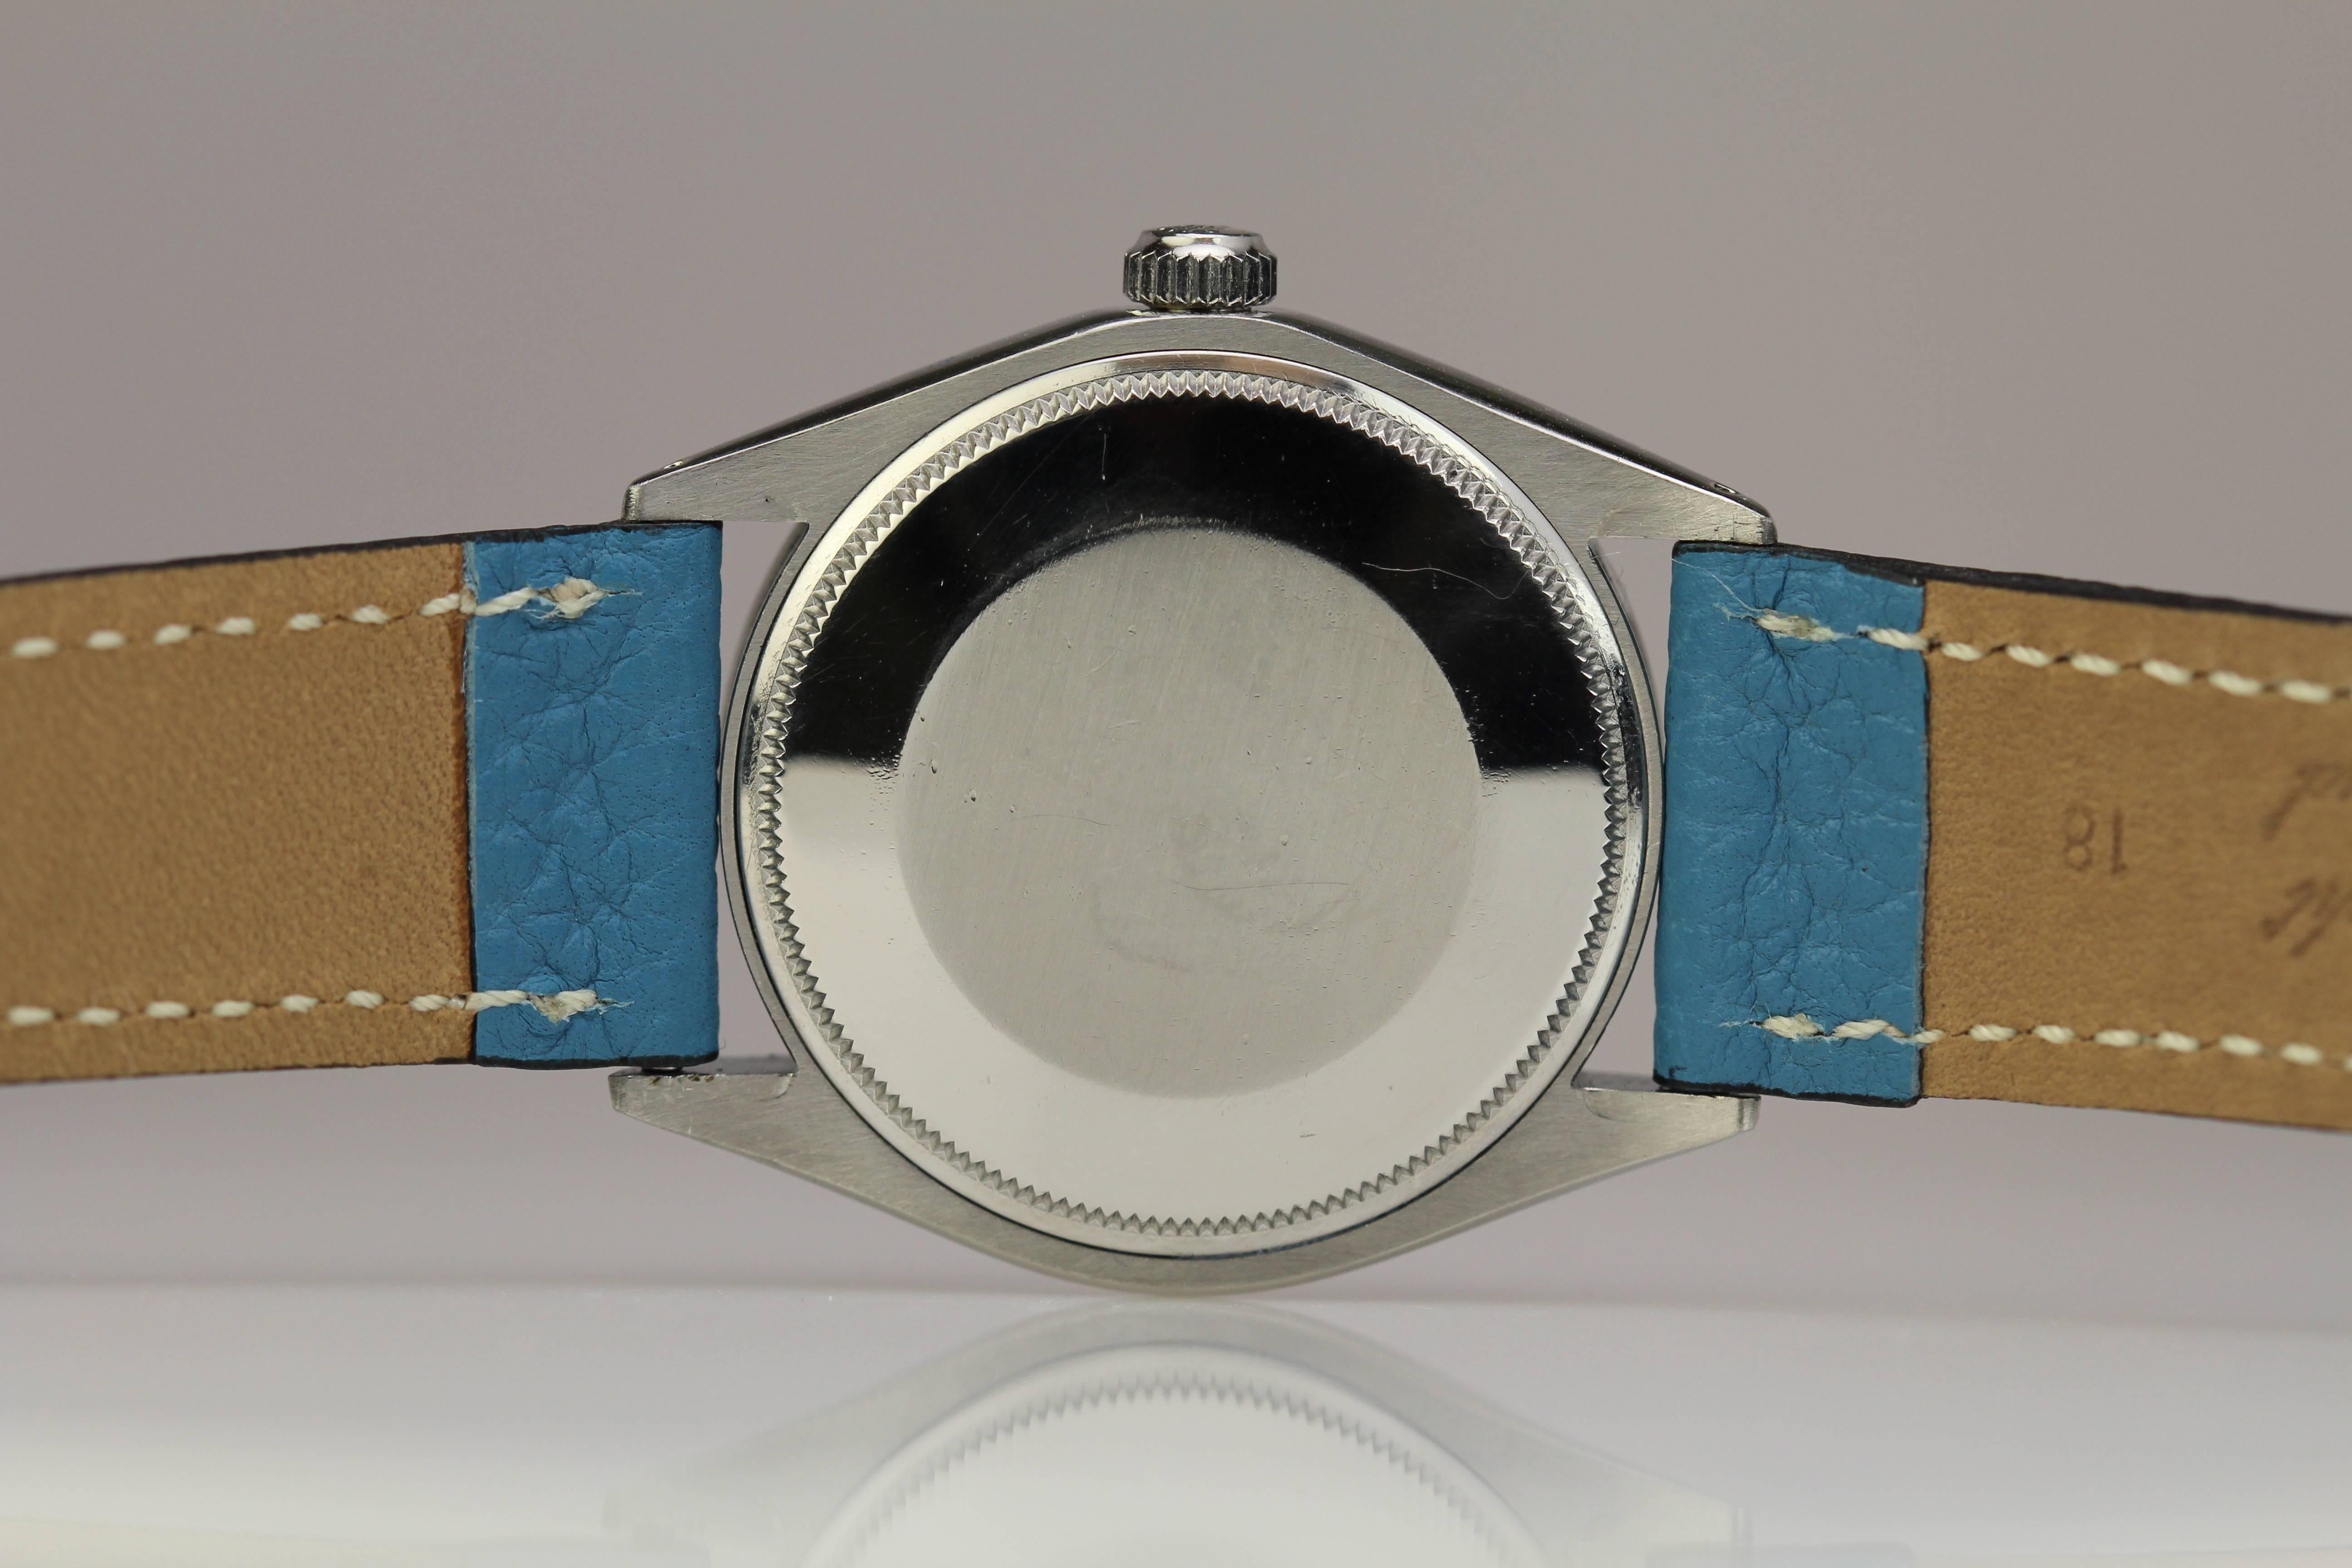 Rolex Stainless Steel Air King Ref 5500 Wristwatch c. 1974 1